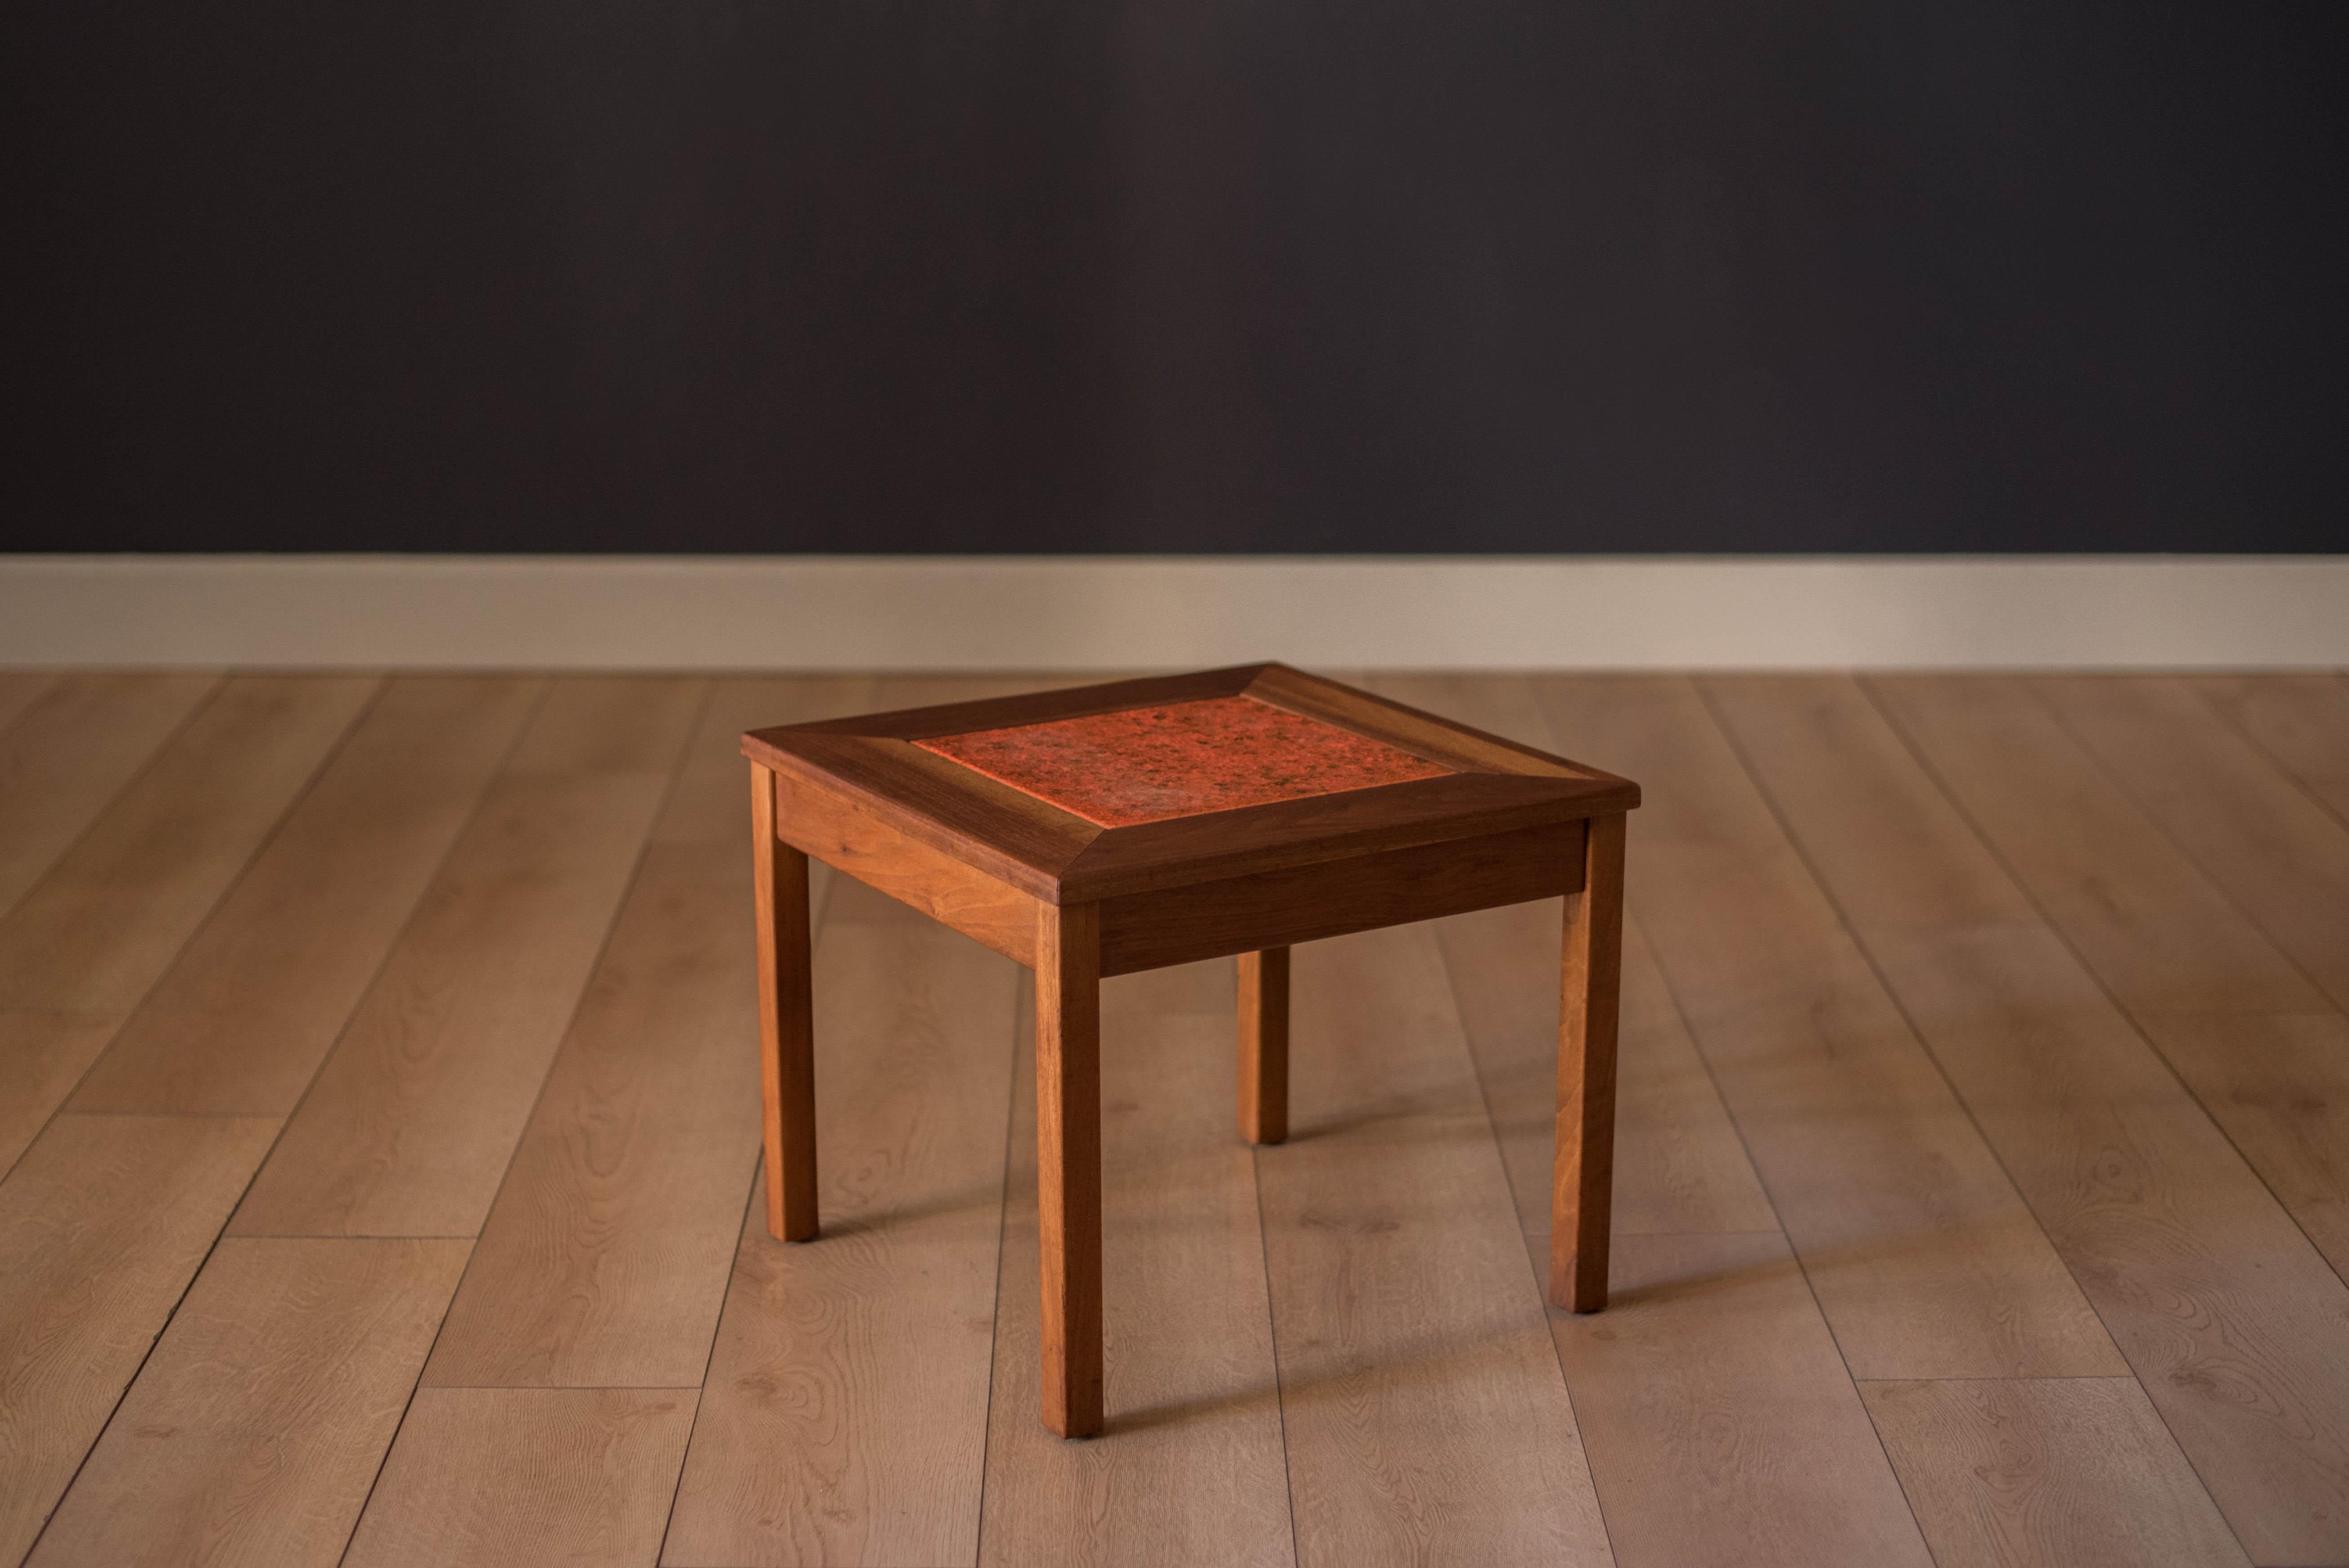 Beistelltisch aus Nussbaumholz, entworfen von John Keal für Brown Saltman aus Kalifornien. Dieses Stück zeigt einen emaillierten, orangefarbenen, glasierten Kachel-Einsatz aus Kupfer. Perfekt als Getränketisch oder Pflanzenständer, der eine haltbare